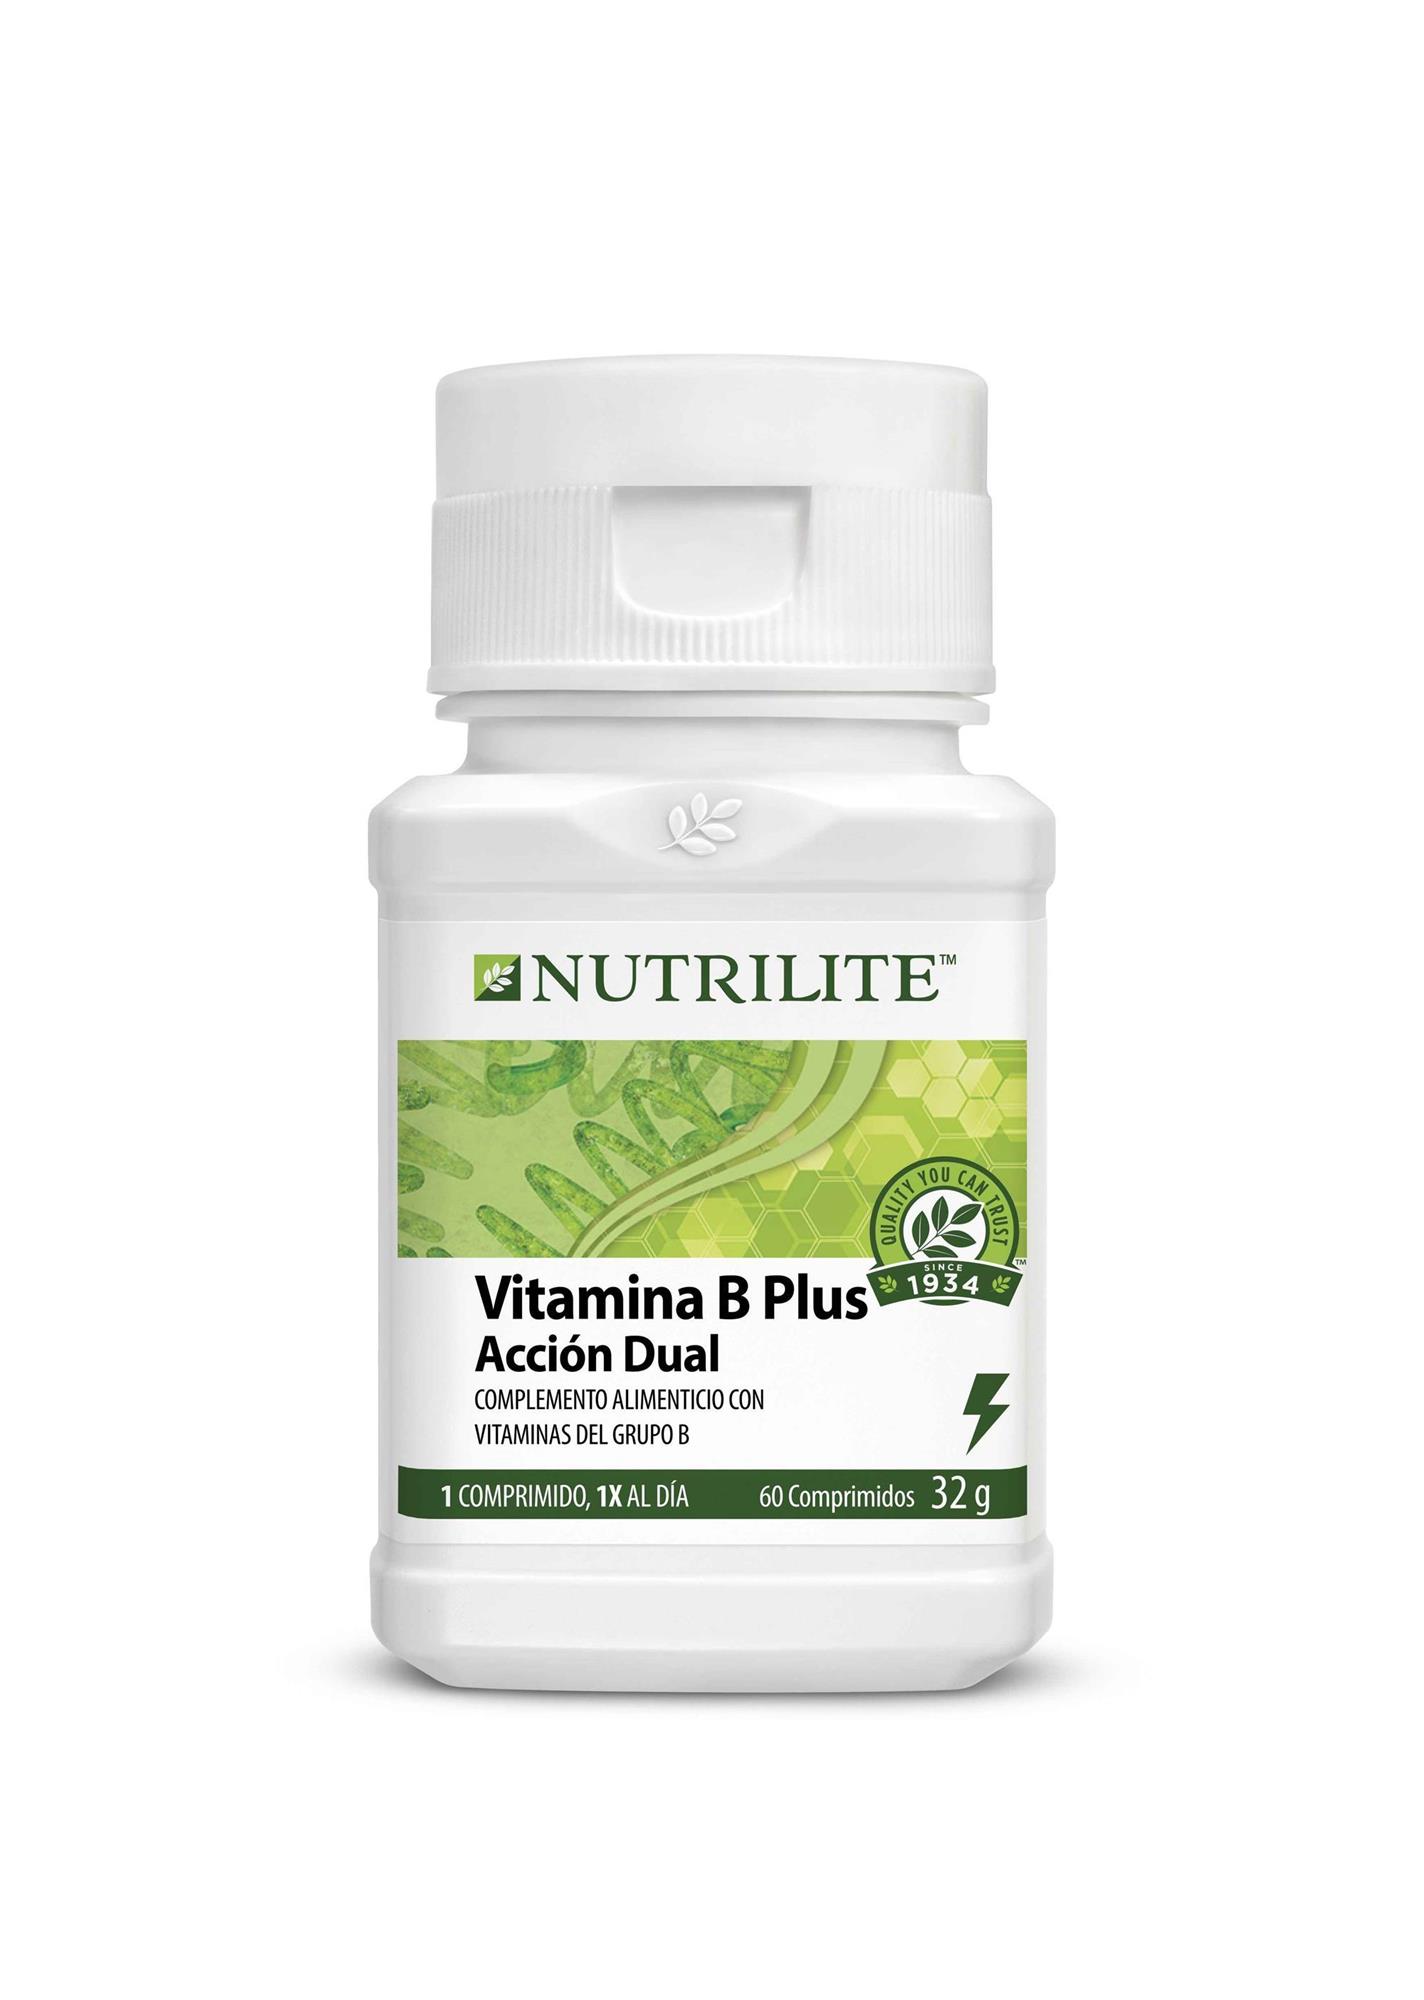 Complejo vitamínico para menopausia, de Nutrilite